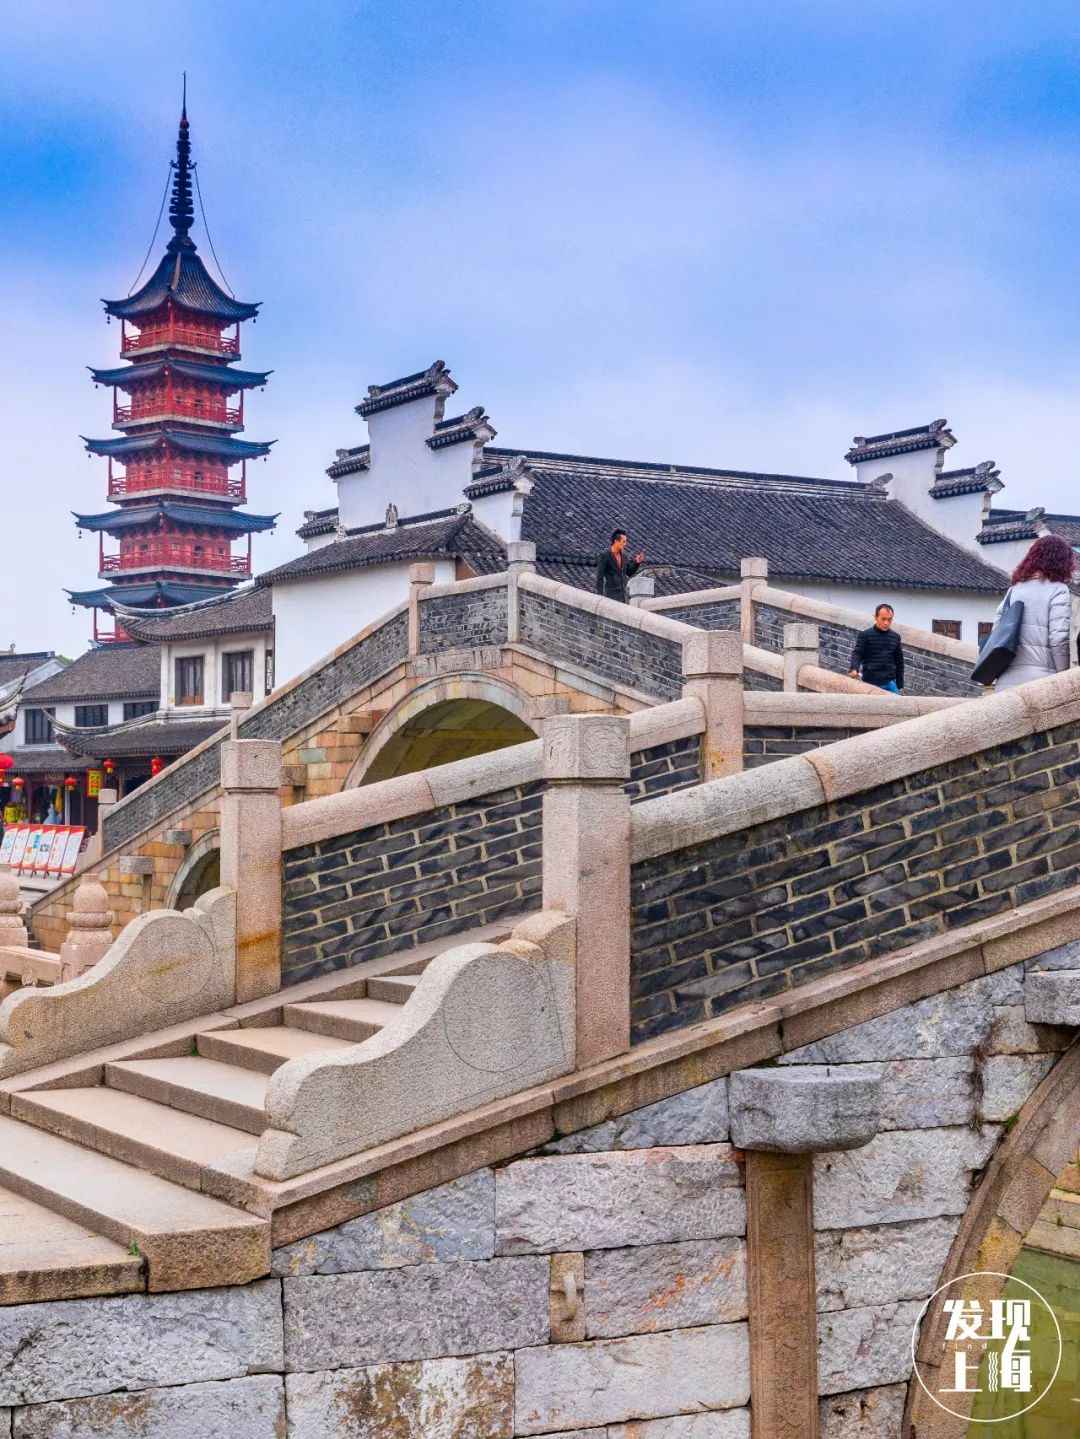 距离上海1小时 昆山竟然隐藏了一座2500年的绝美古镇